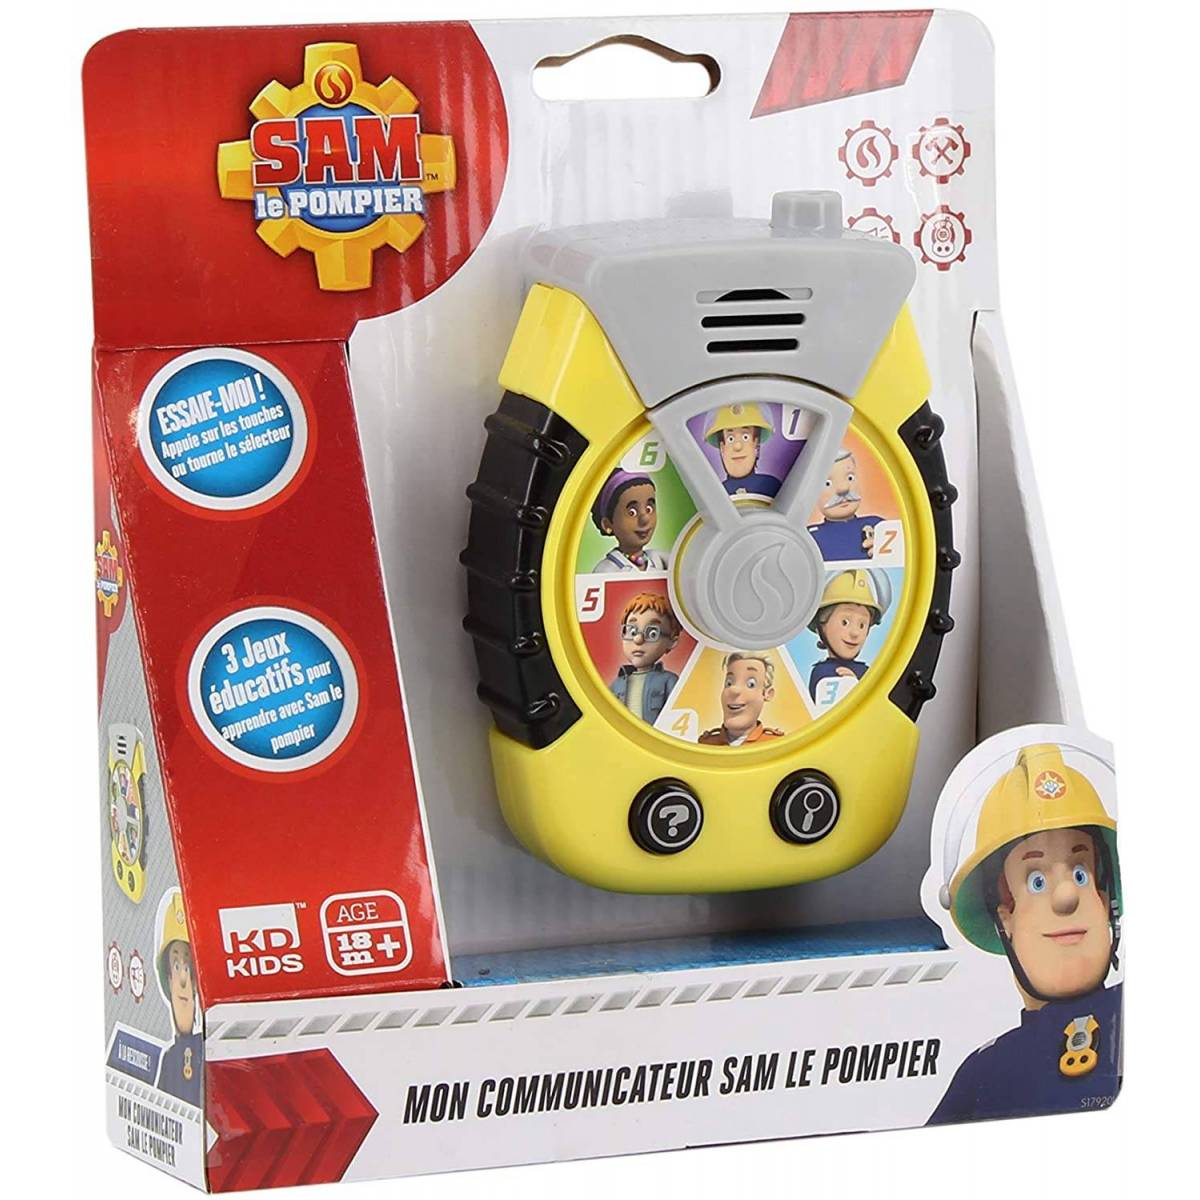 Sam le Pompier - Communicateur - S17920